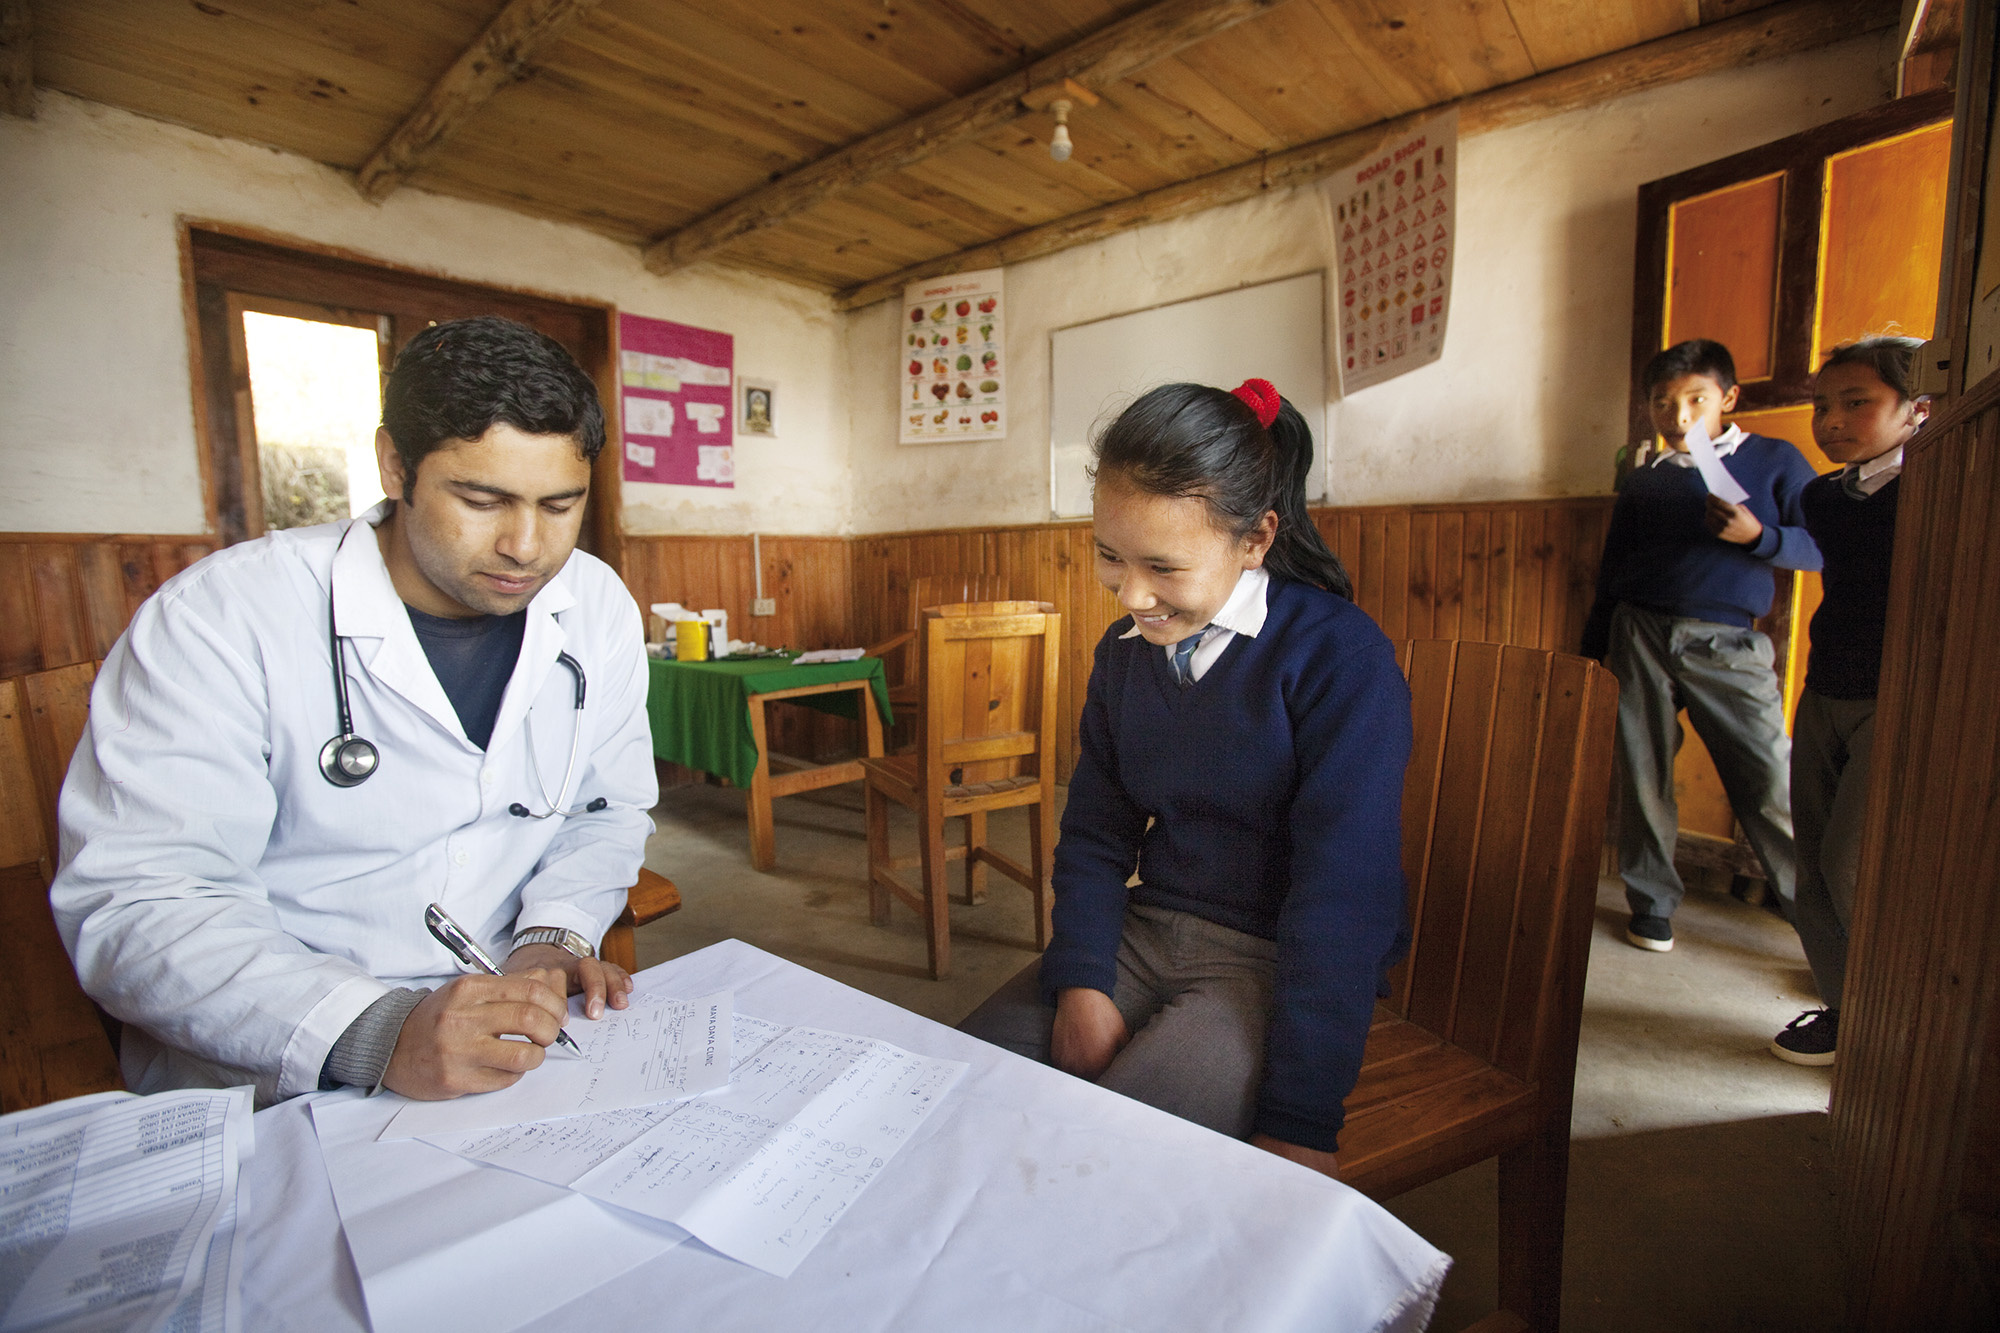 Reportage | Losan Piatti - Fotografo Italia_Nepal 2015 Mount Everest School_Campo Medico